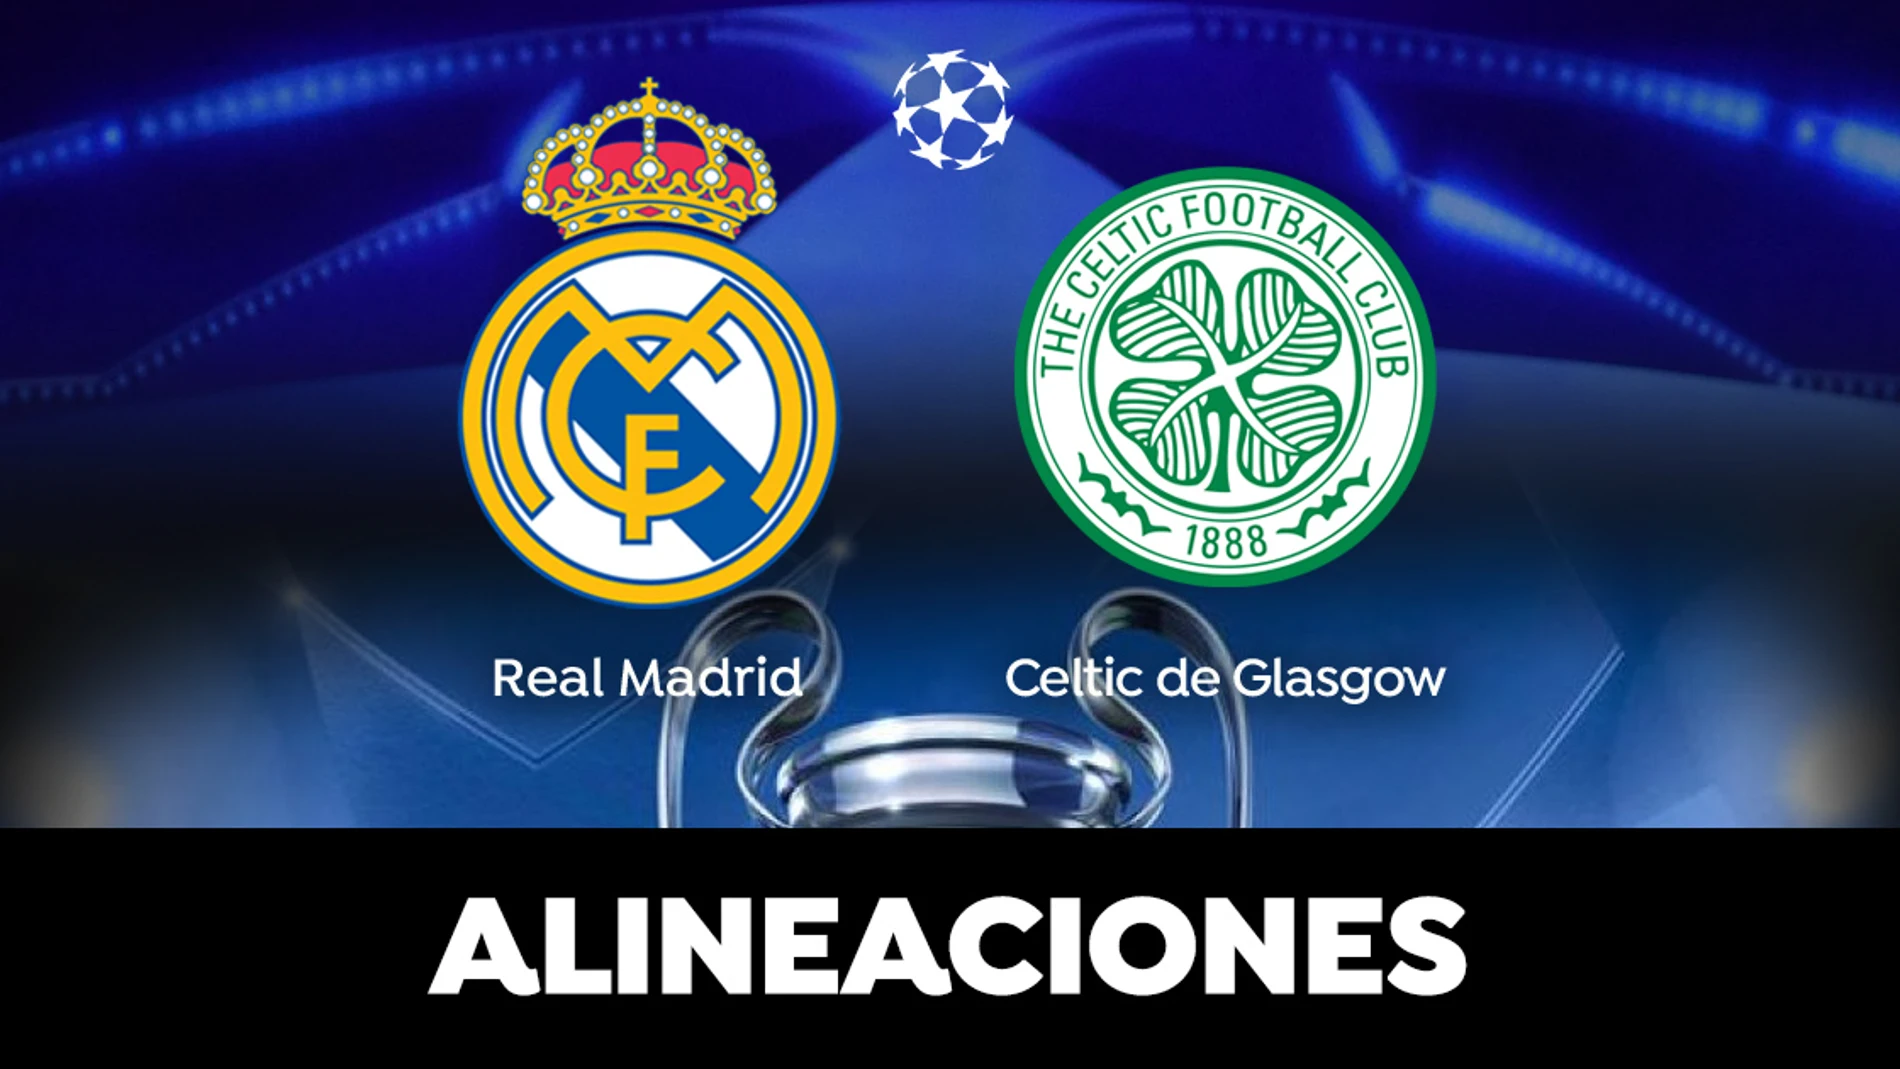 Alineación del Real Madrid hoy contra el Celtic de Glasgow en el partido de Champions League